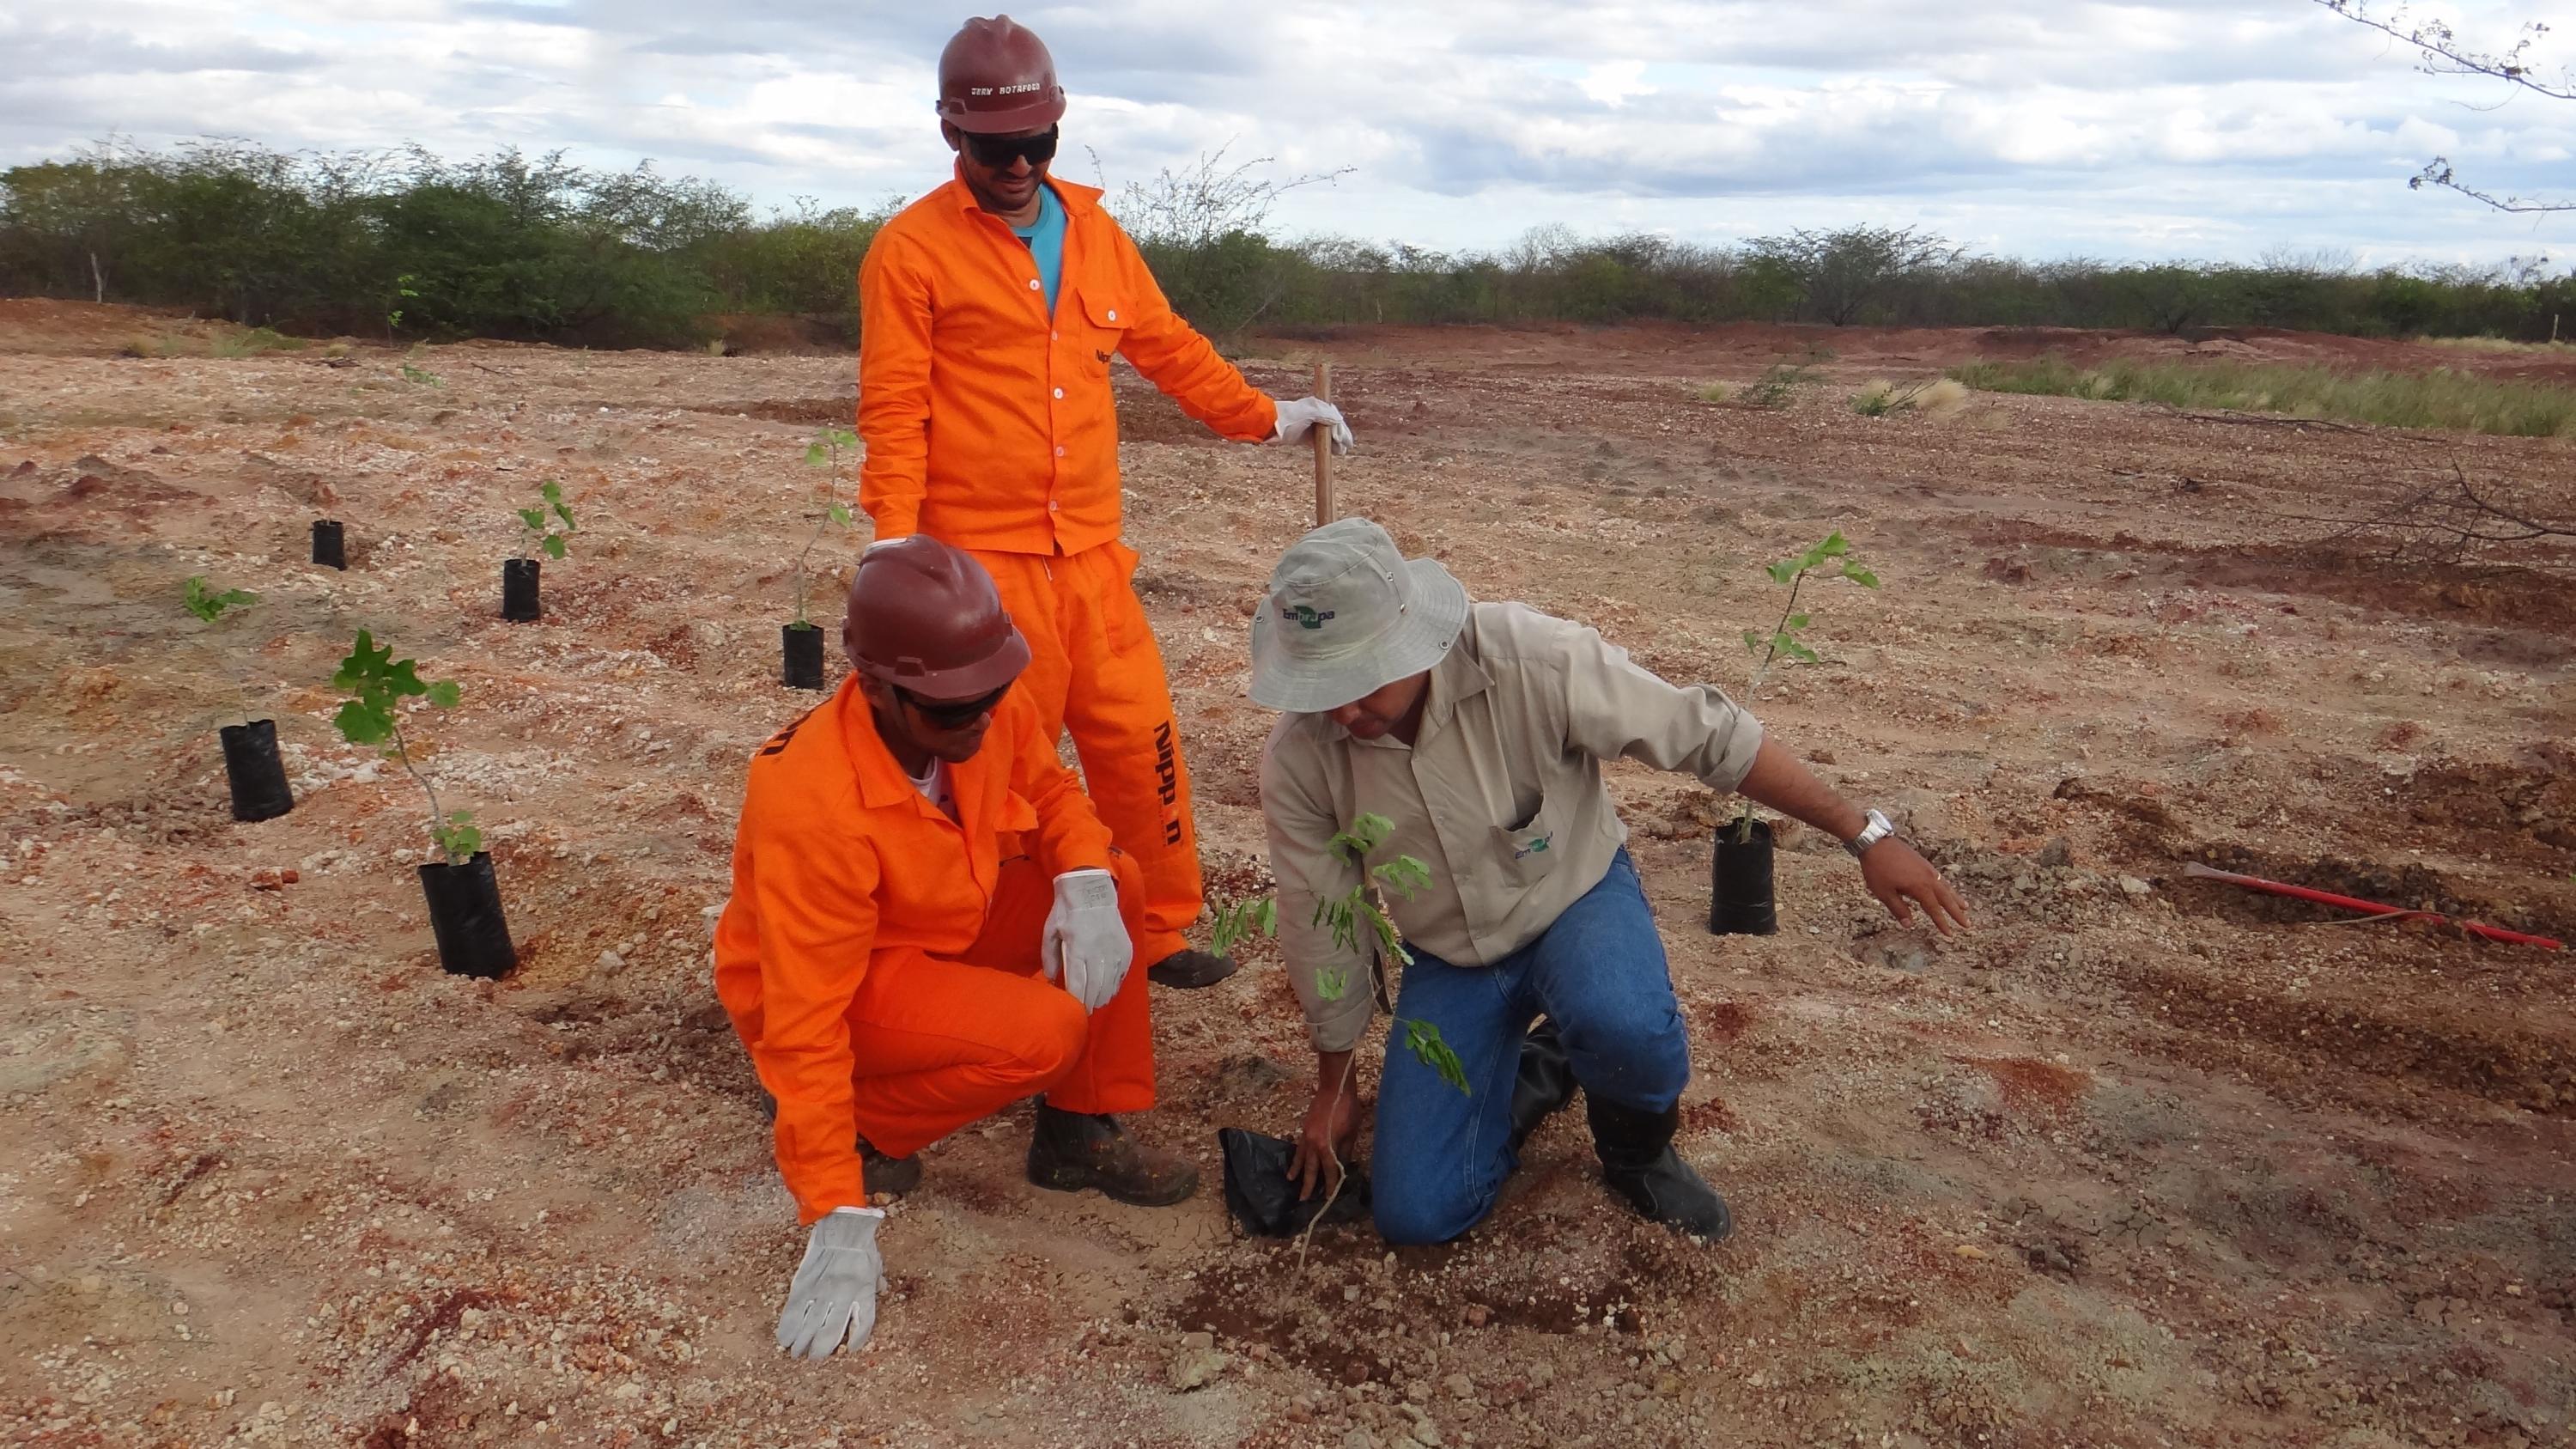 Ação de plantio de mudas para tentar combater degradação do solo na Caatinga (foto: Liliane Bello/Embrapa)